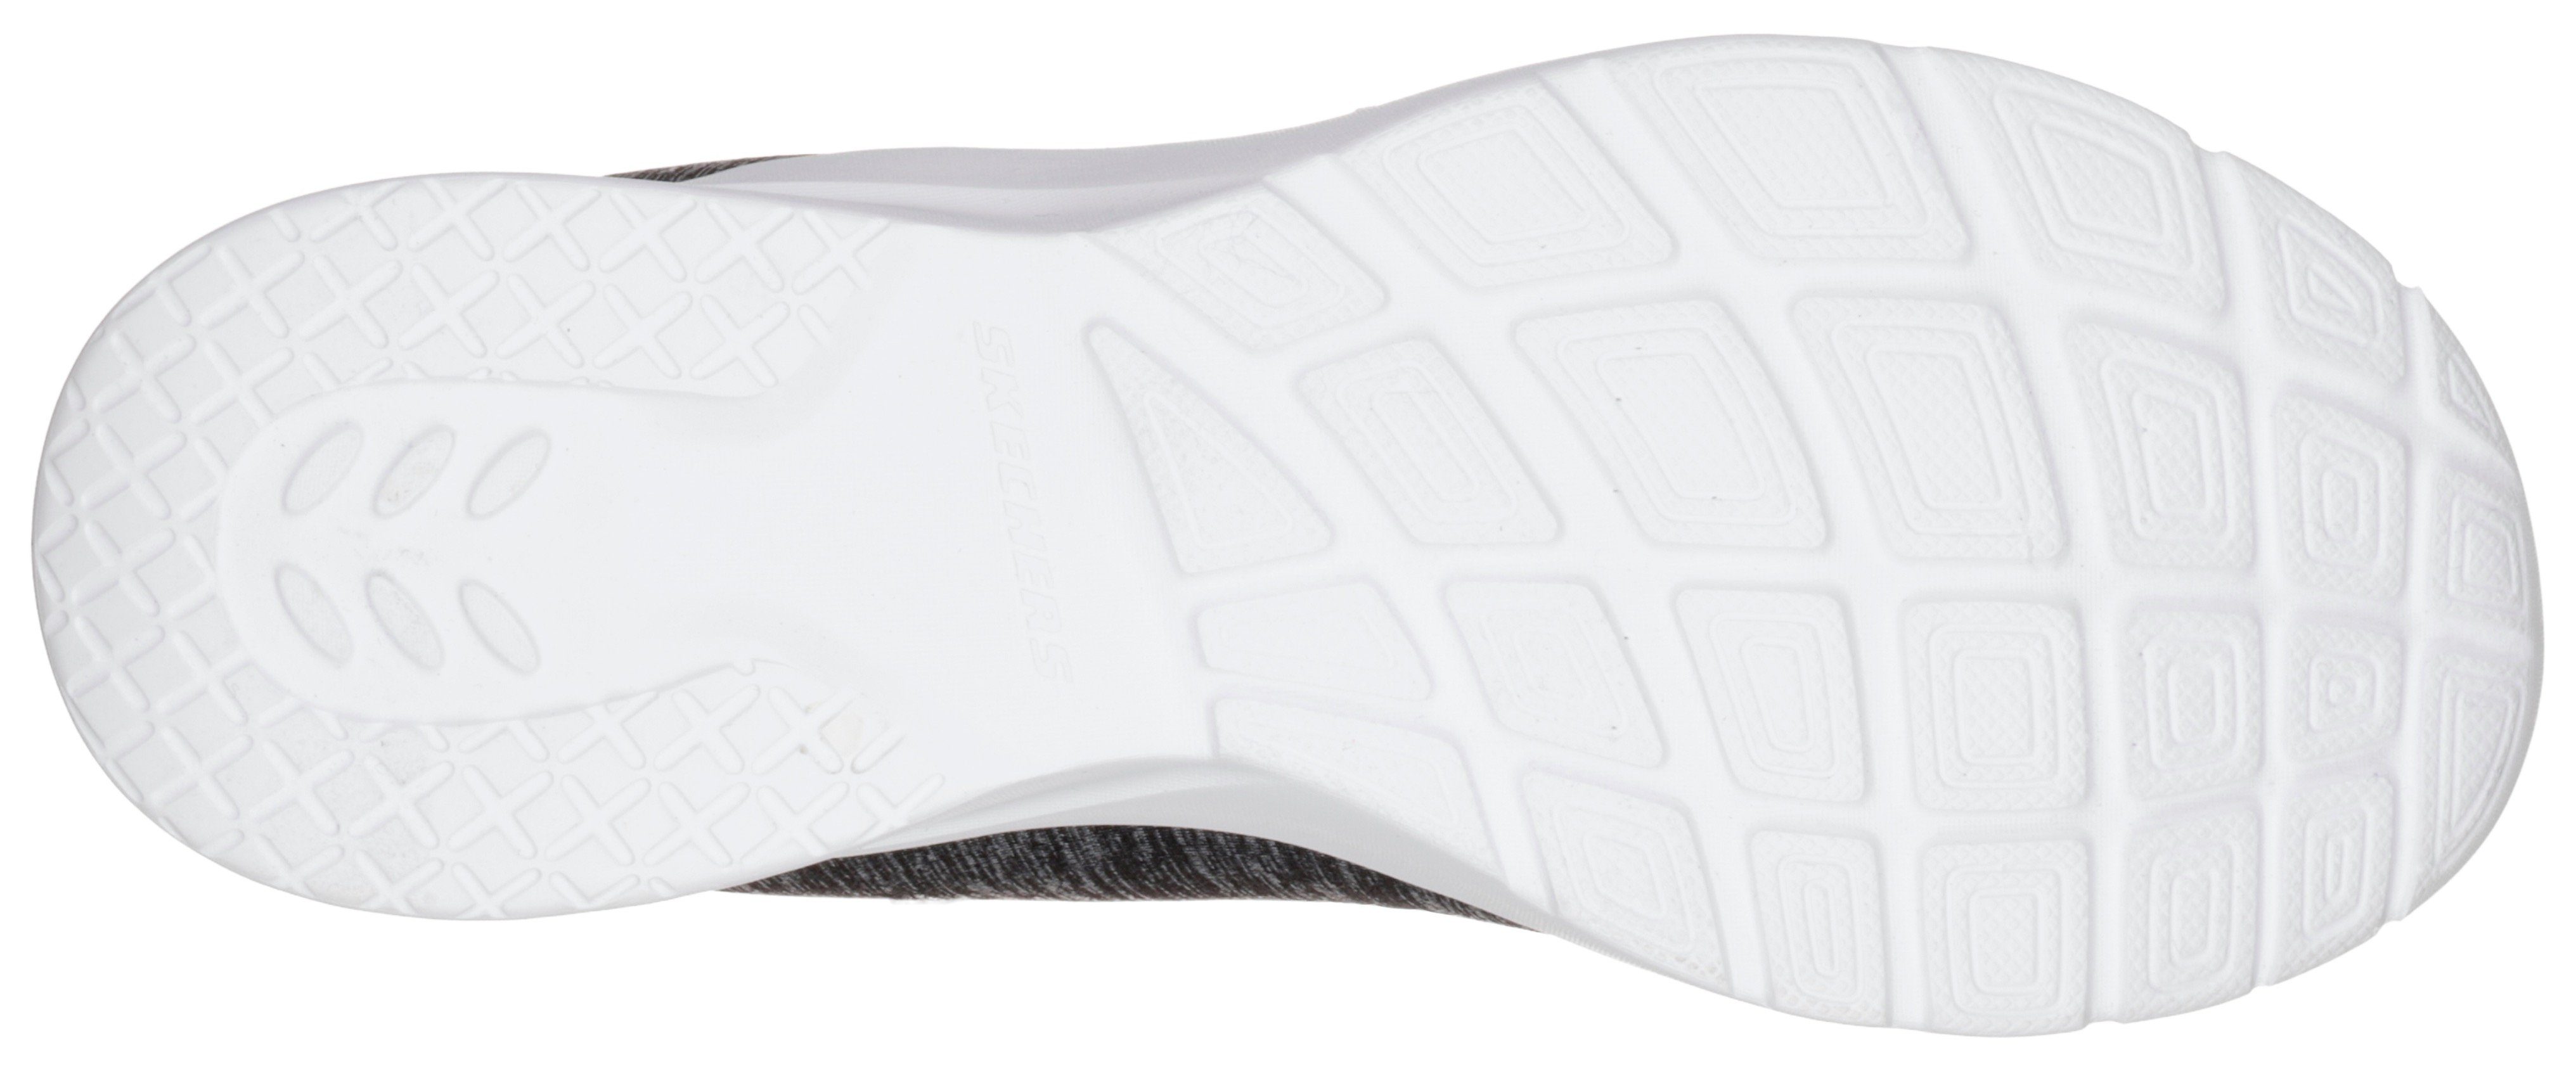 schwarz-pink 2.0-IN Slip-On Maschinenwäsche geeignet Skechers für FLASH DYNAMIGHT A Sneaker